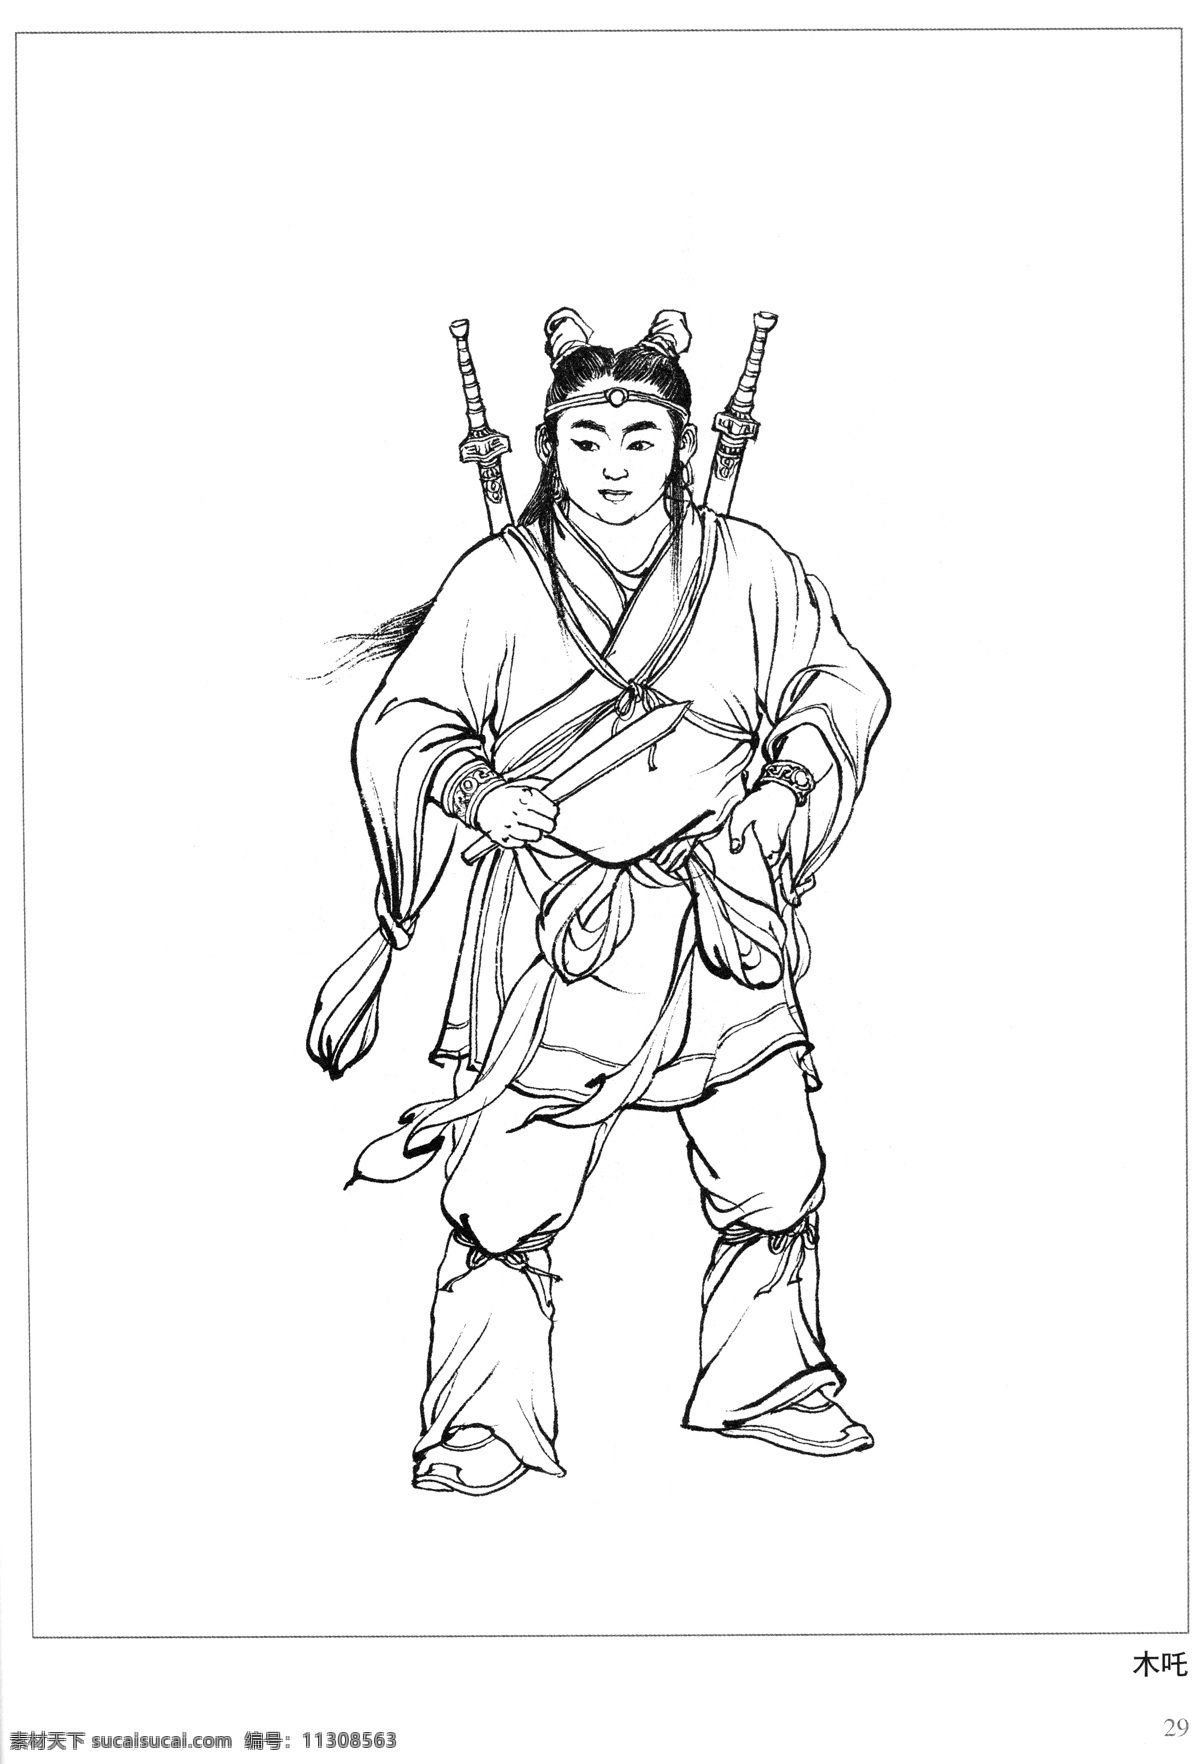 木吒 封神演义 古代 神仙 白描 人物 图 文化艺术 传统文化